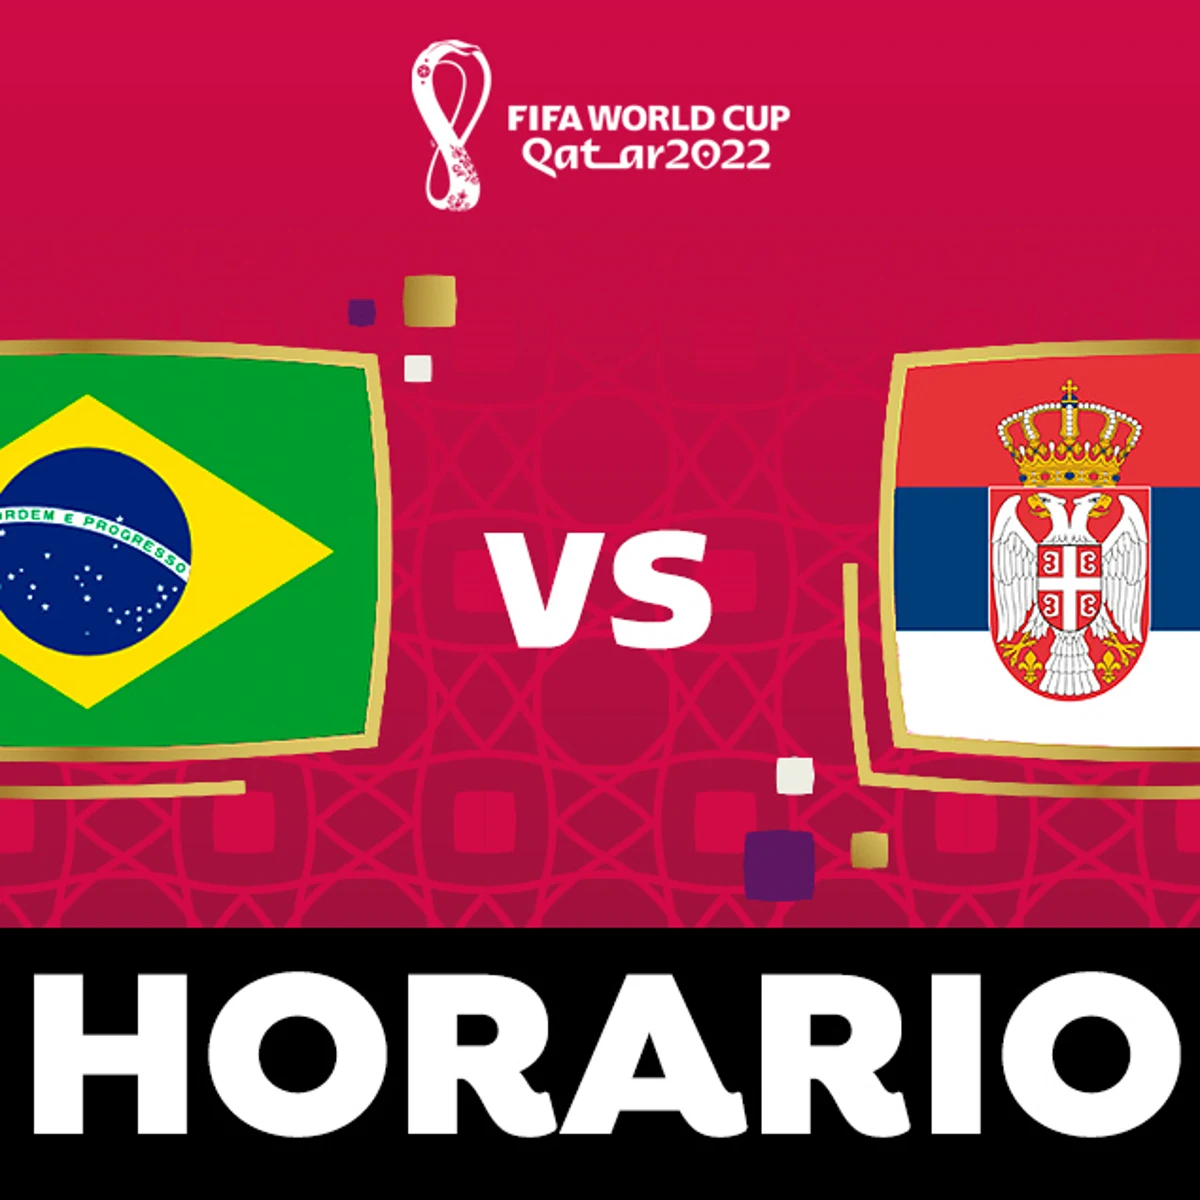 Brasil - Horario ver el partido del Mundial de Qatar en directo